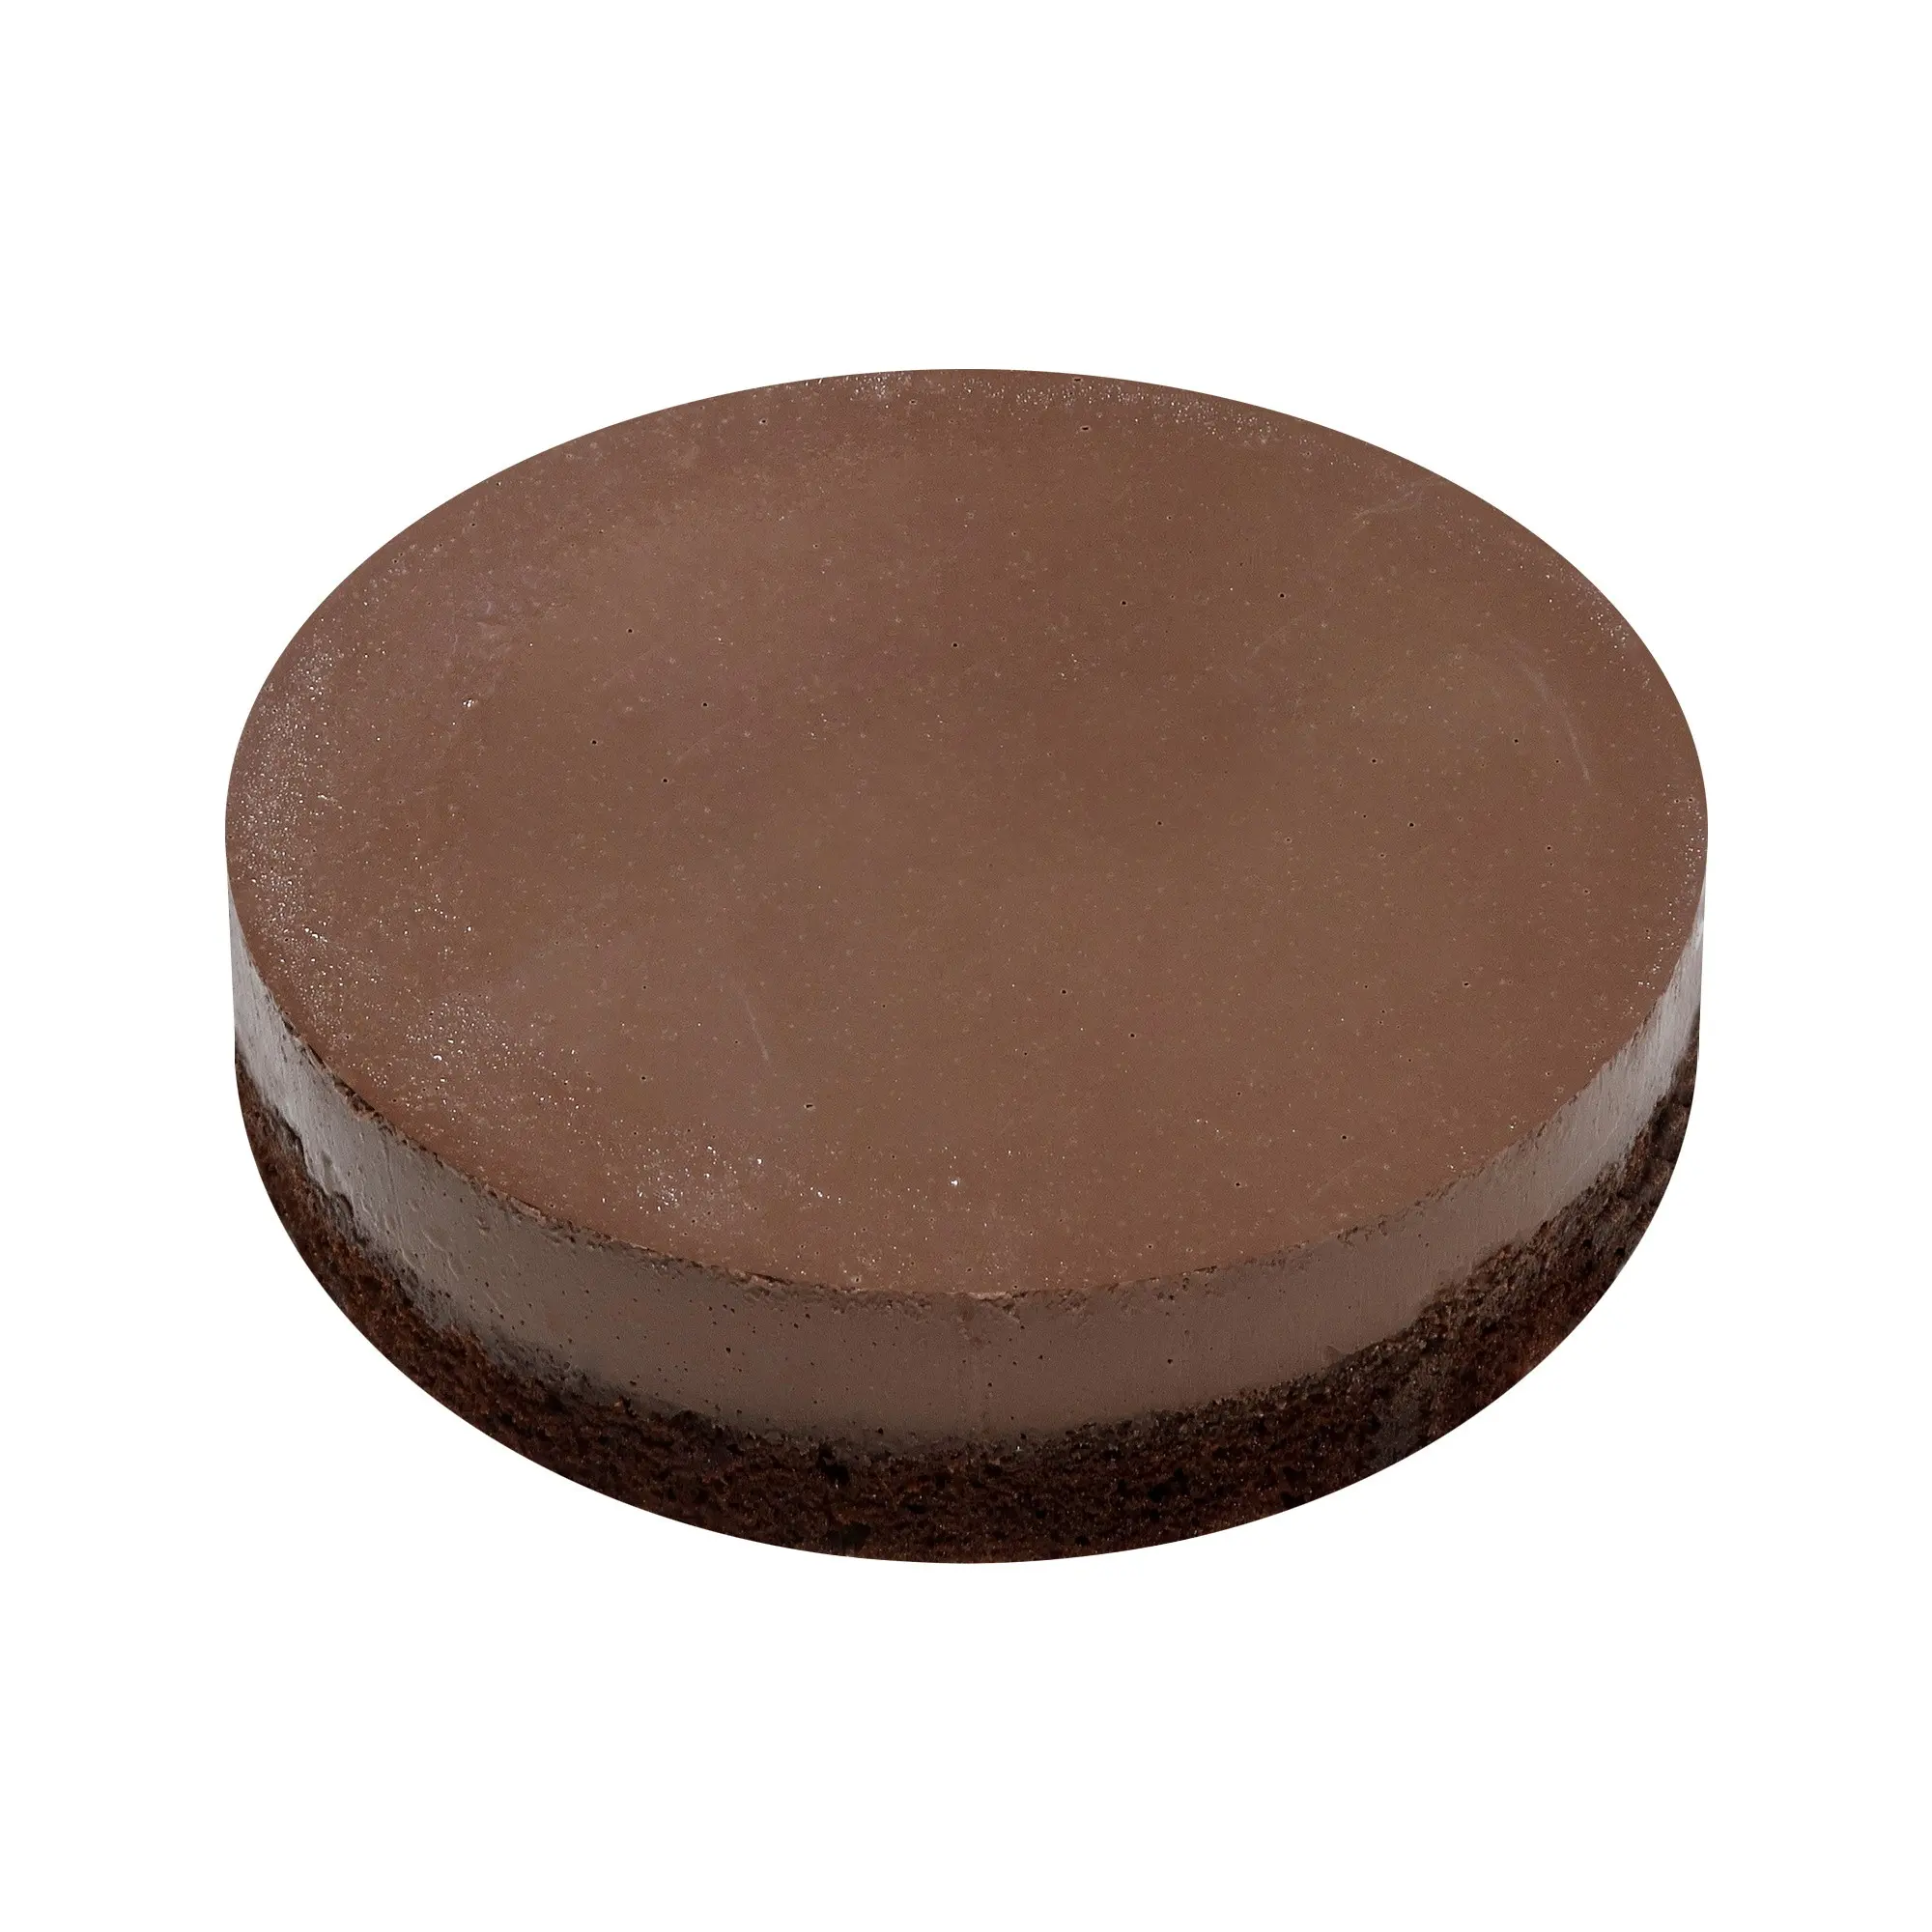 البيع المباشر من المصنع 7 بوصة شوكولاته كعكة براوني شوكولاته مثلجة كعكة شوكولاته رخيصة الشوكولاته معبأة بشكل فردي